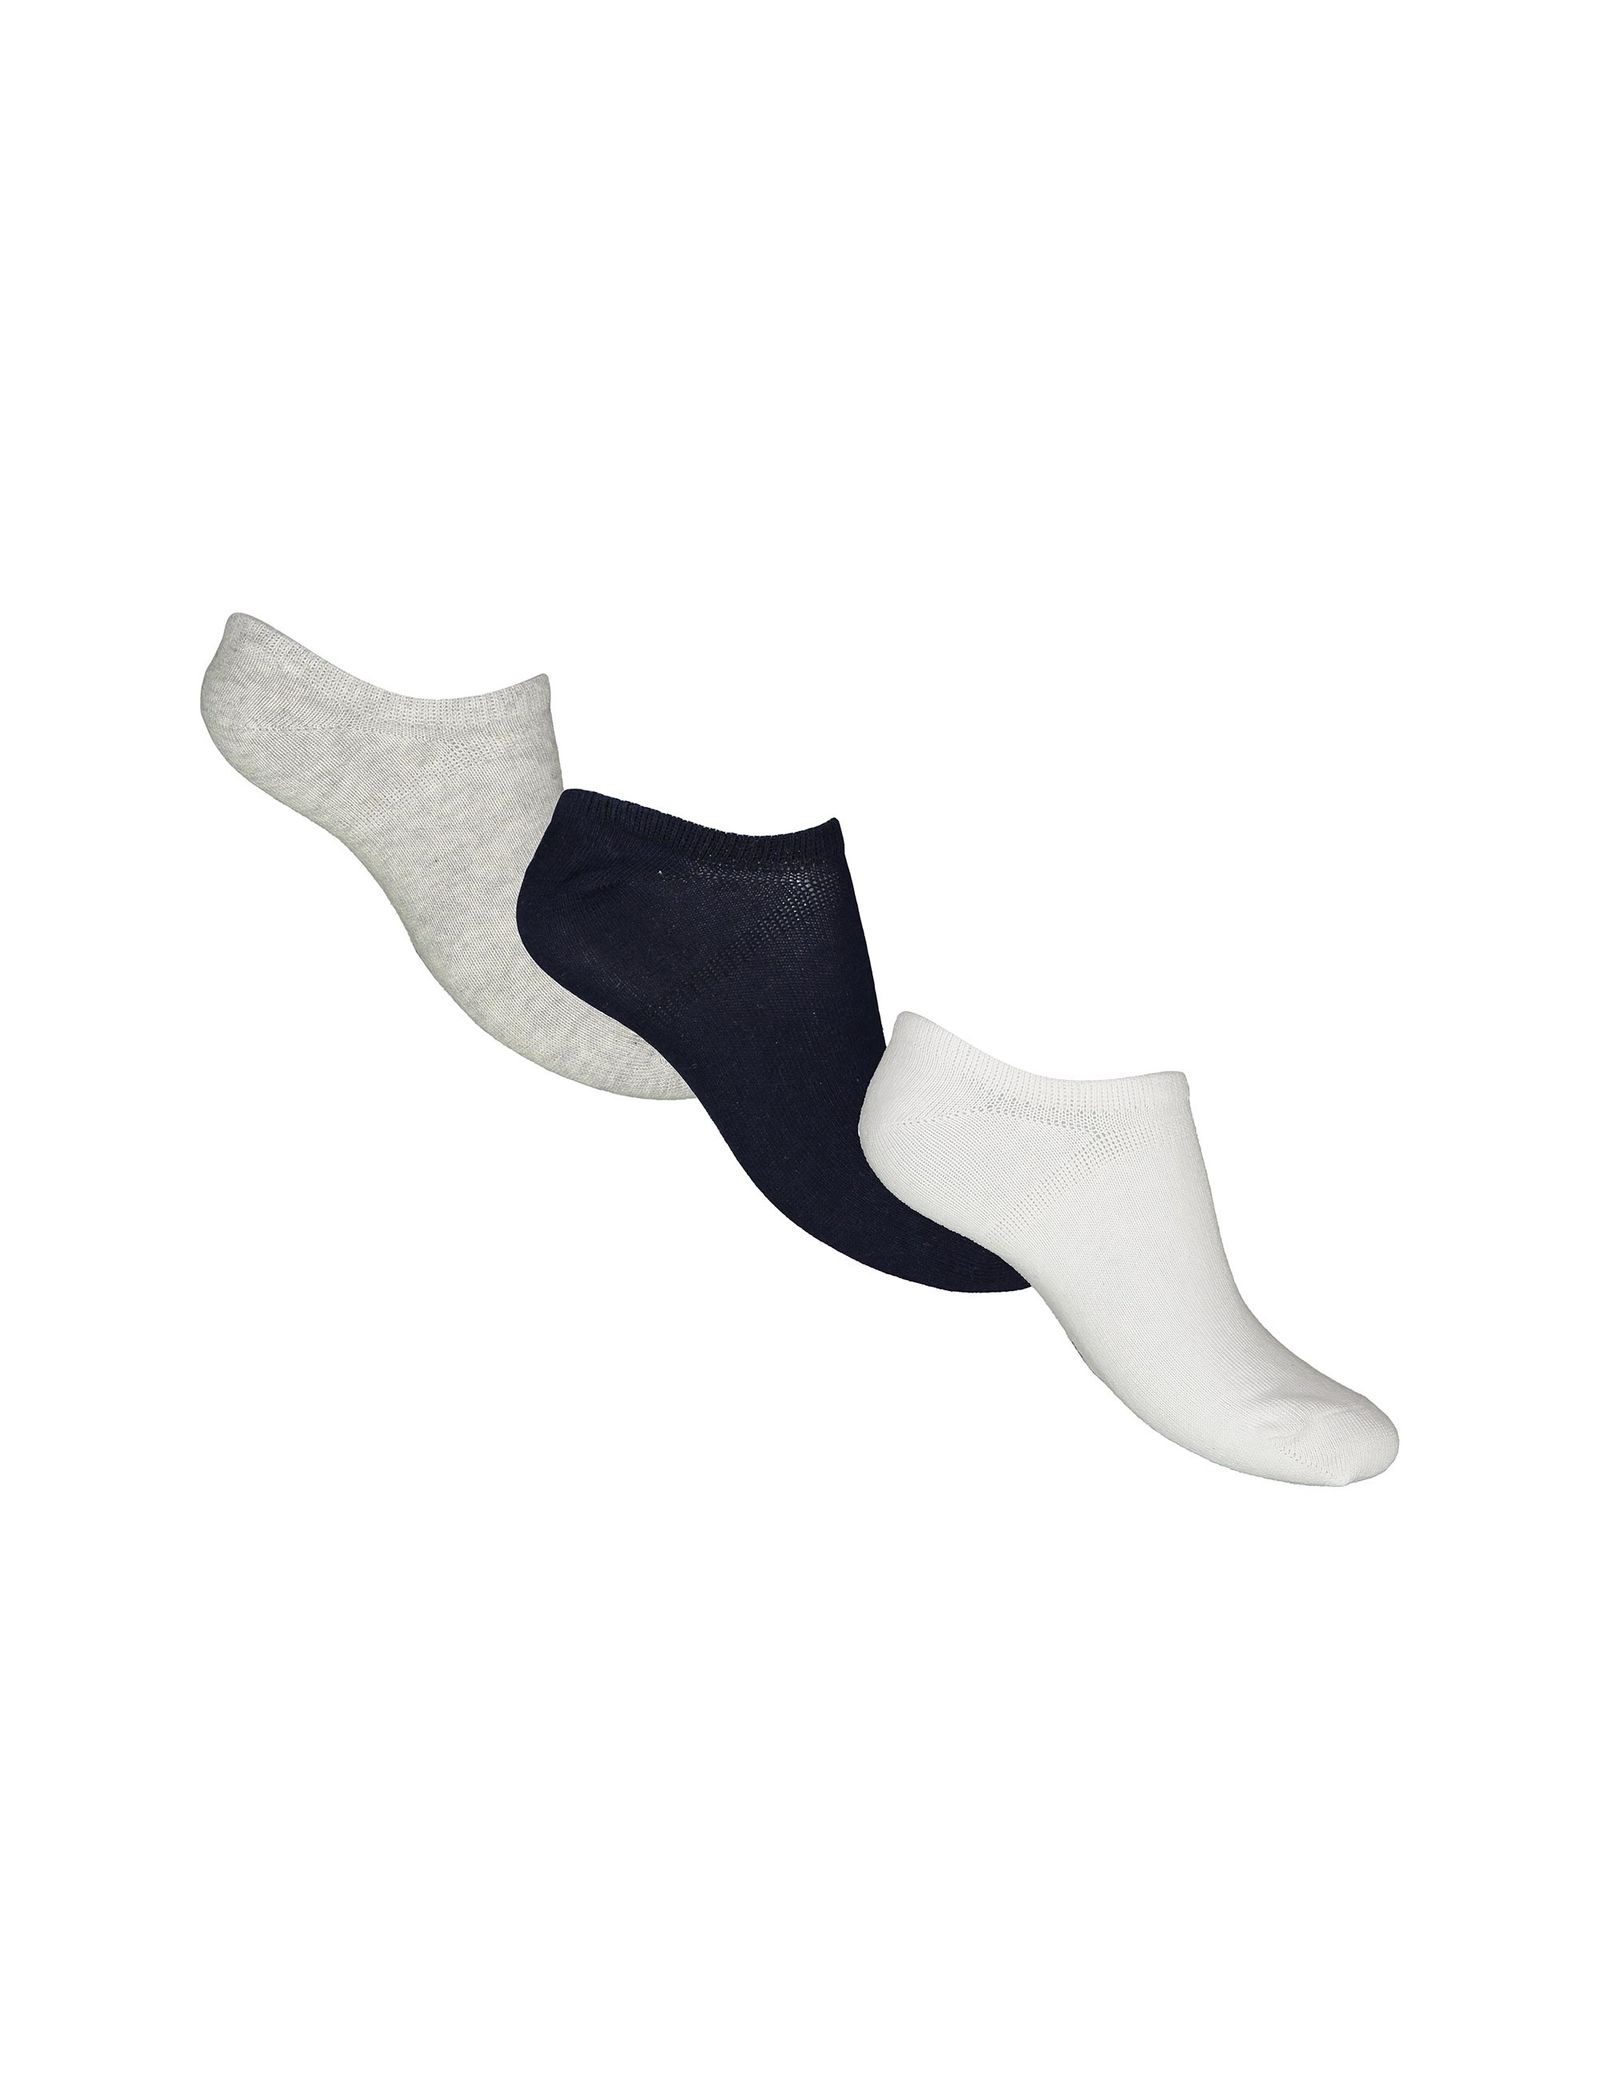 جوراب نخی بدون ساق بچگانه بسته 3 عددی - بلوکیدز - سفيد/طوسي/سرمه اي - 2